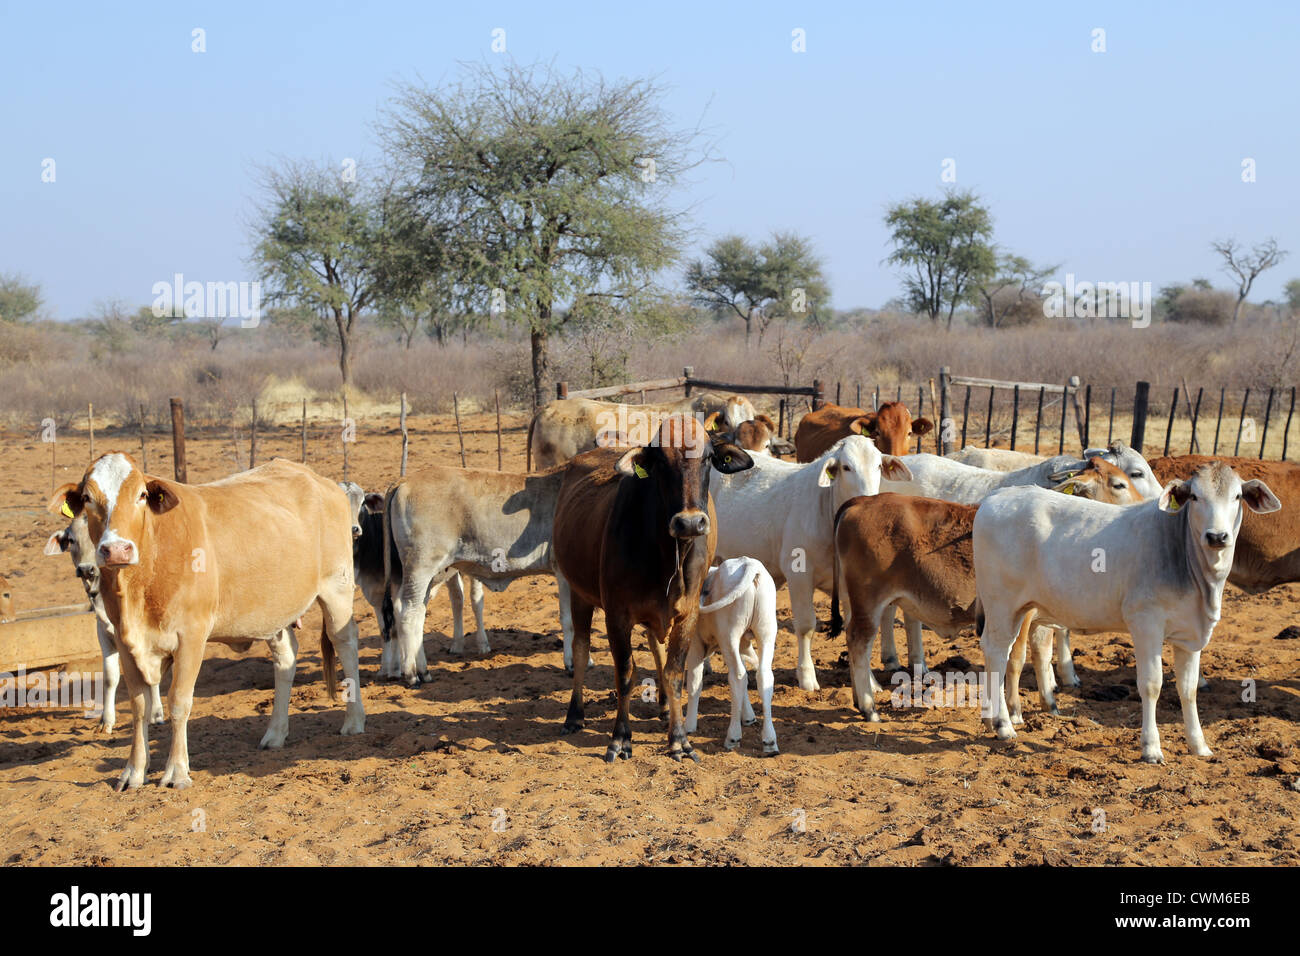 Las vacas y ganado en pastoreo de arena, el desierto de Kalahari, Namibia Foto de stock